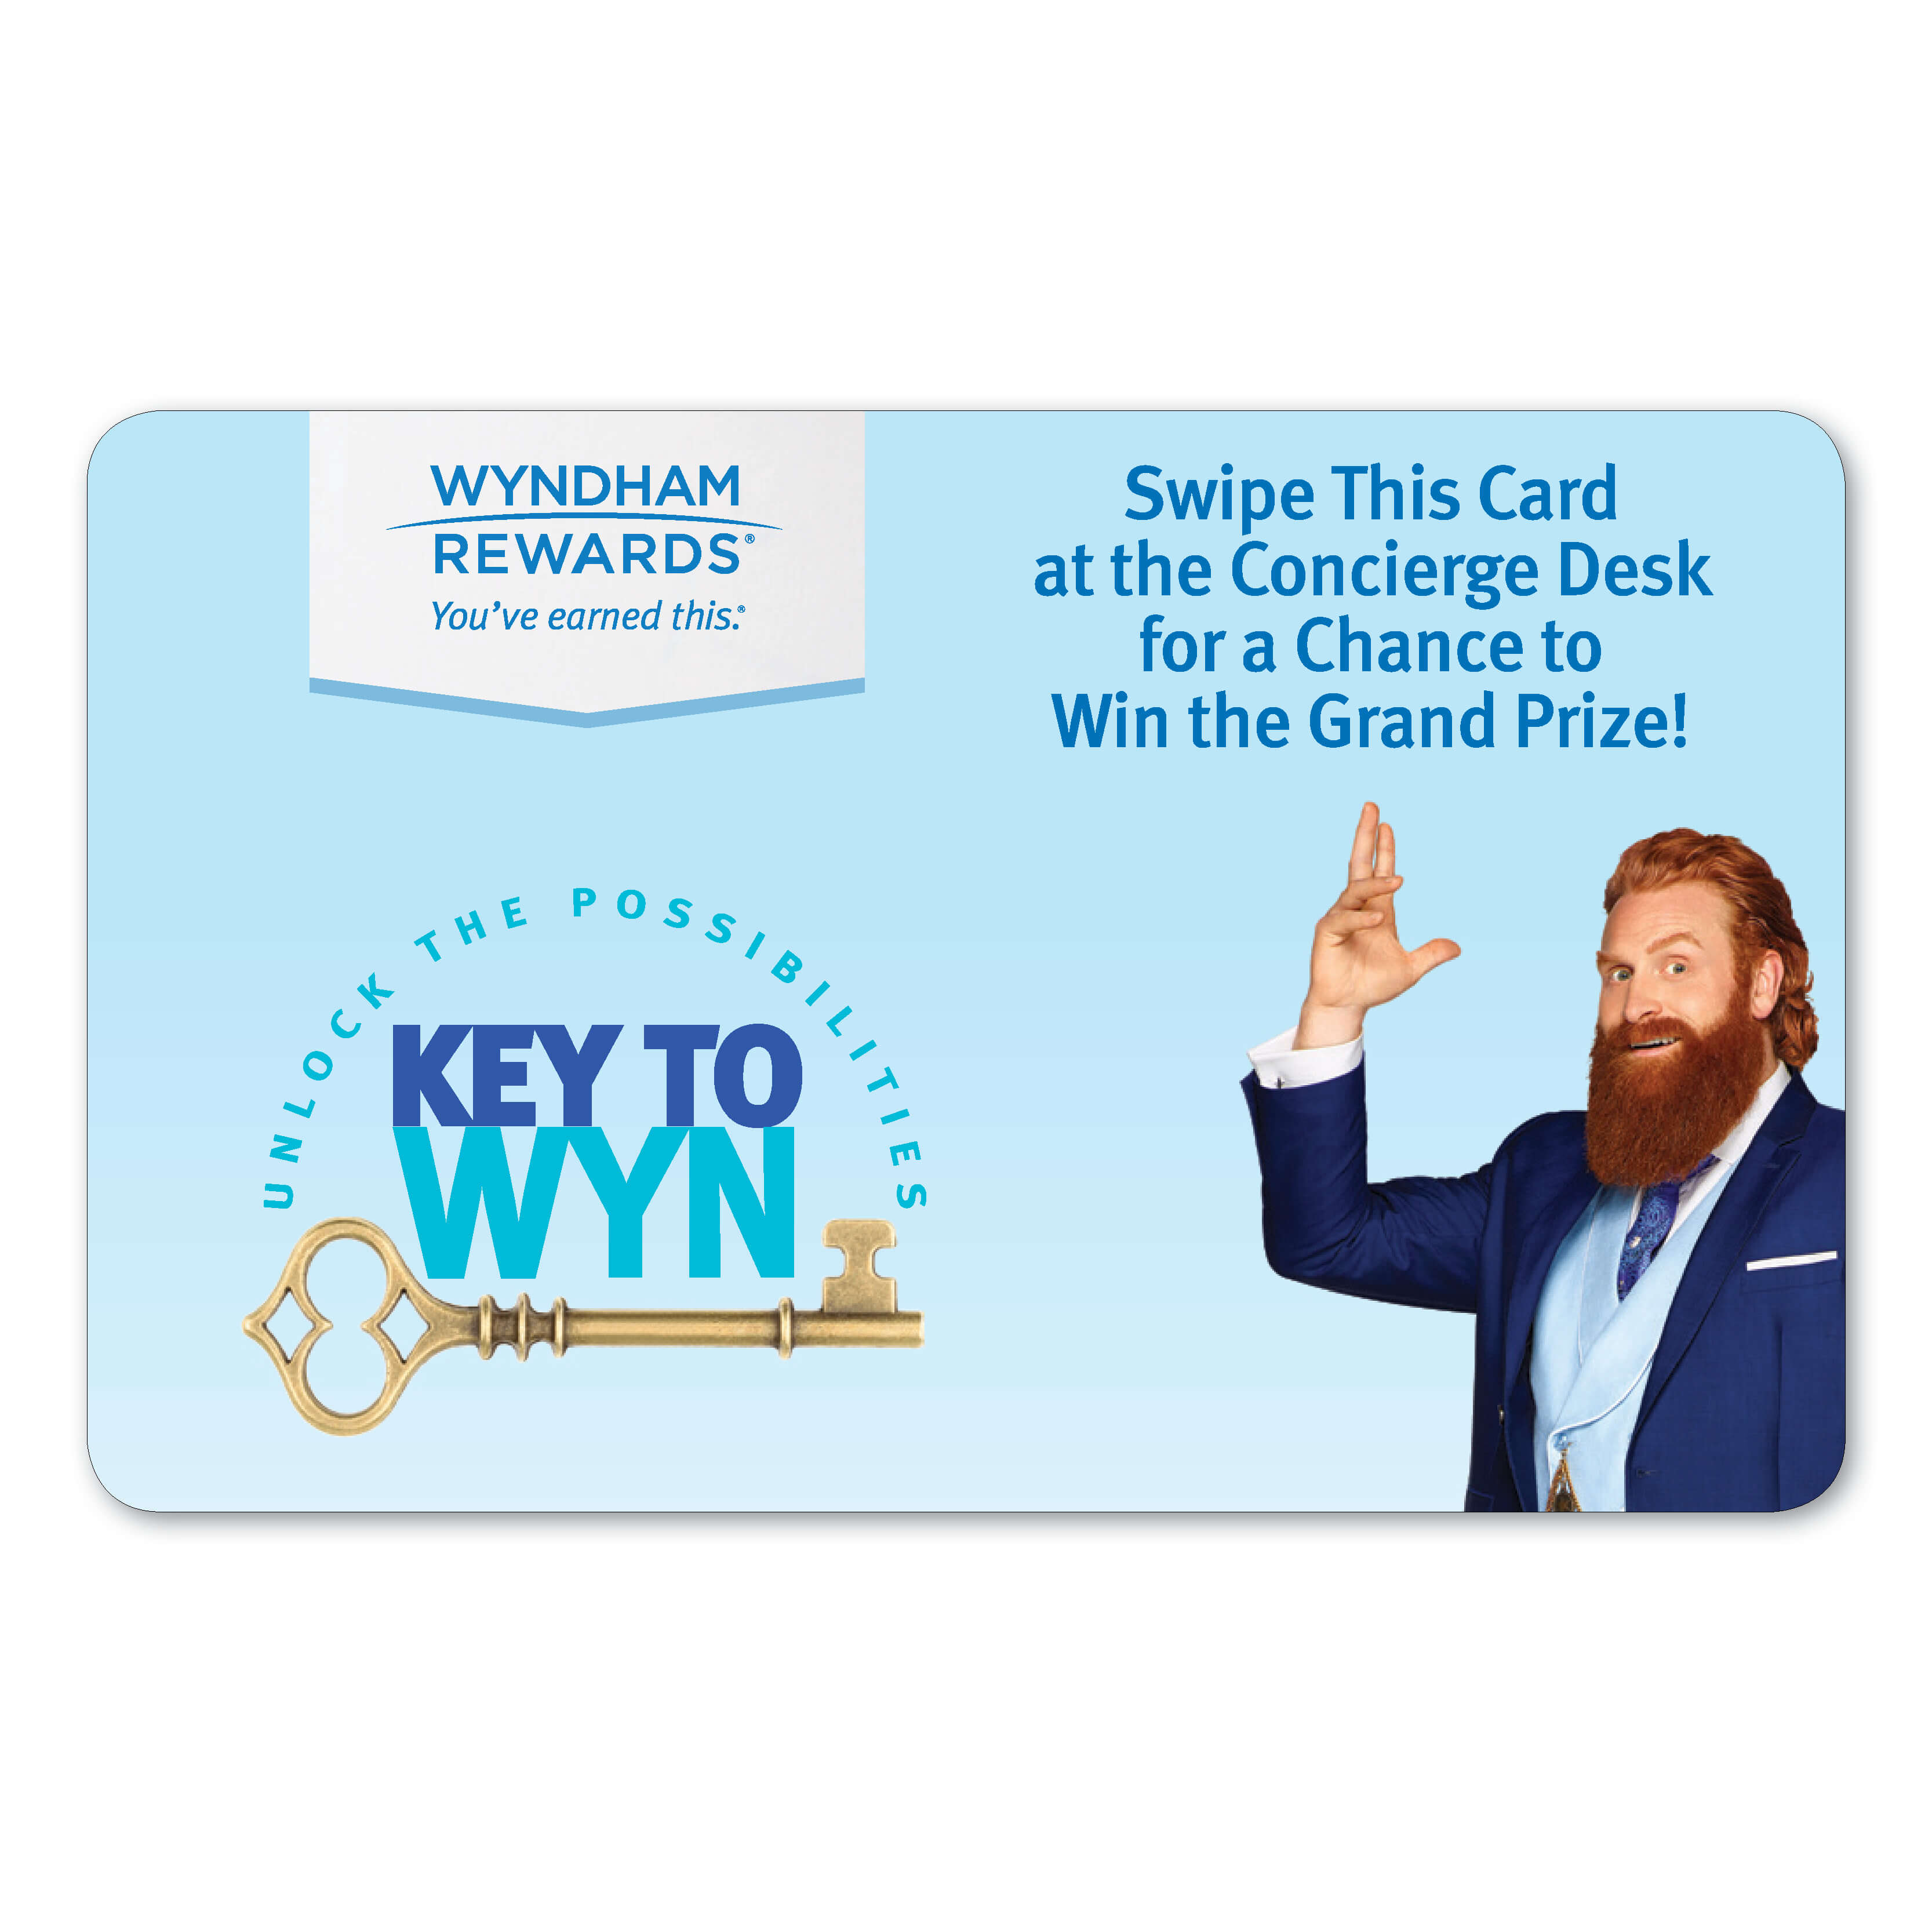 Wyndham Rewards Key to Wyn Unlock the possibilities